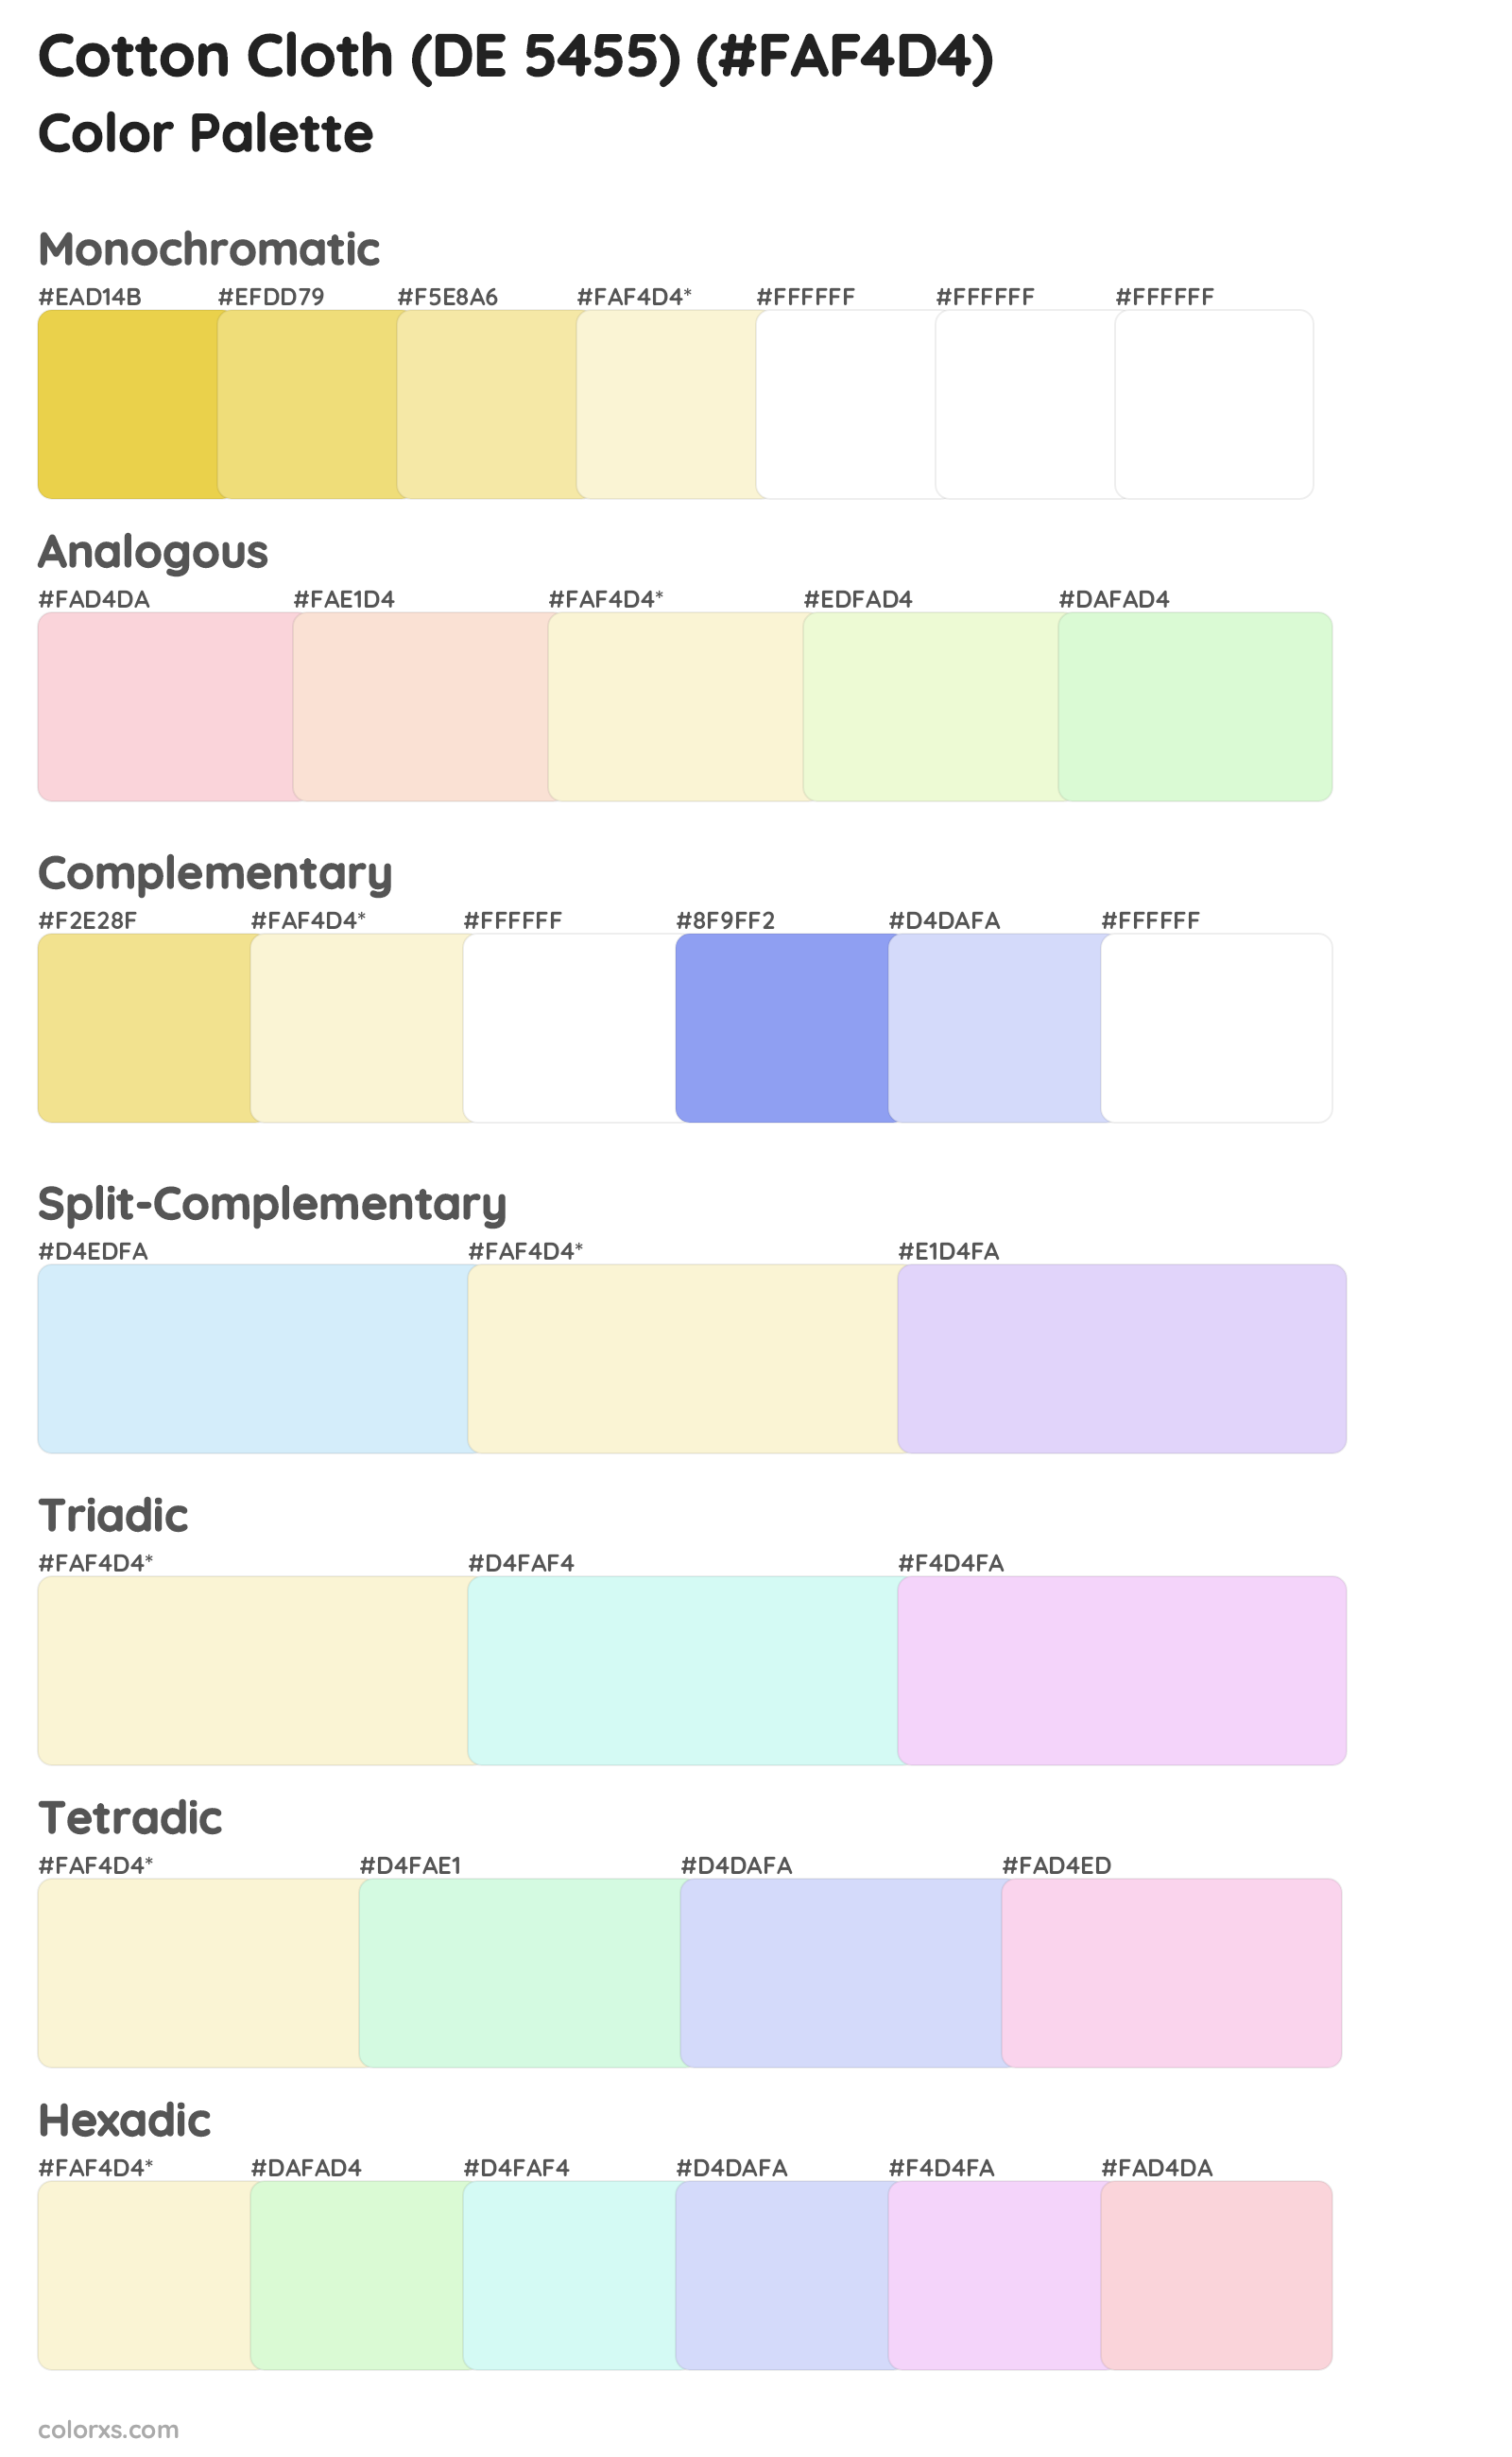 Cotton Cloth (DE 5455) Color Scheme Palettes